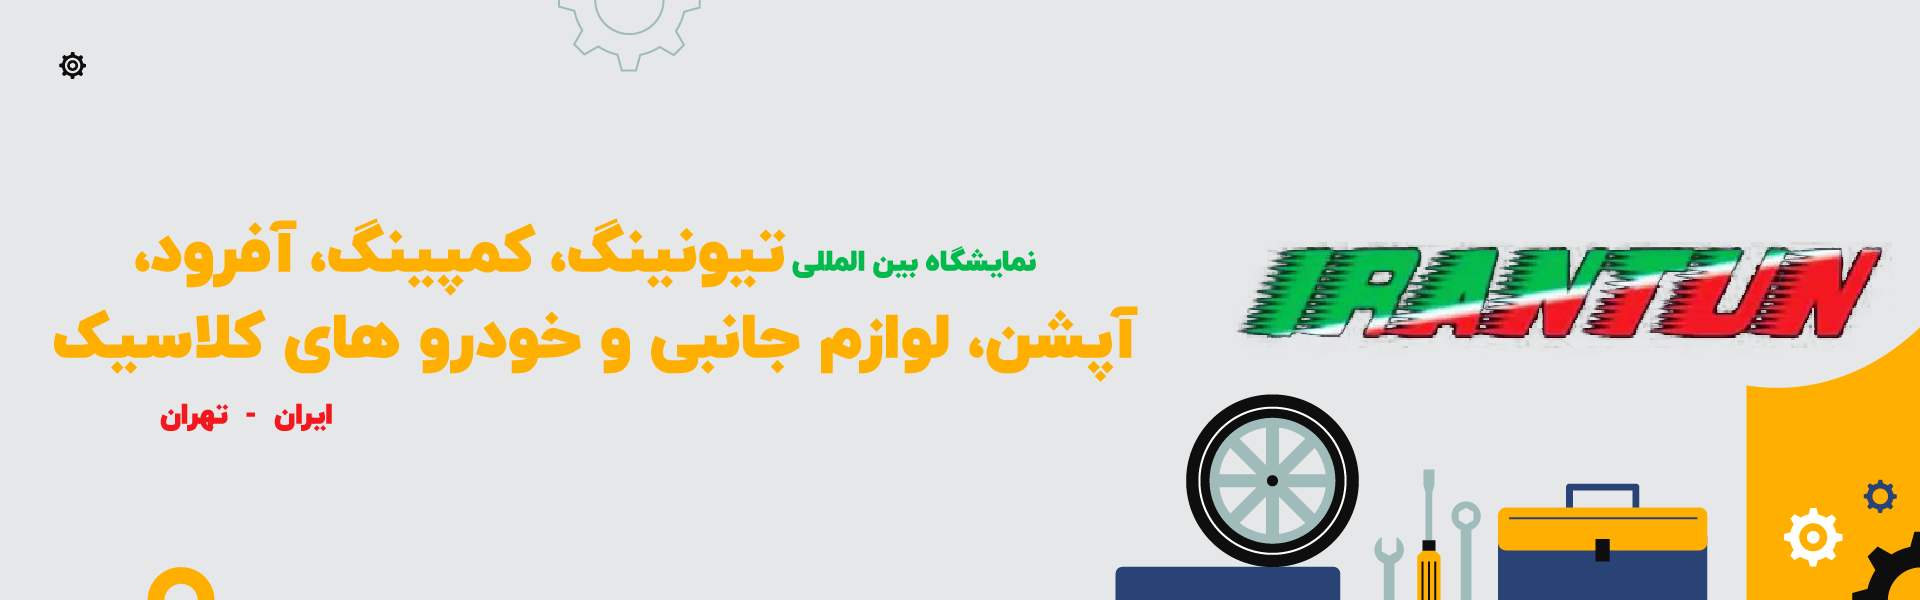 نمایشگاه بین المللی کمپینگ، سفر و خودروهای کلاسیک و آفرود تهران